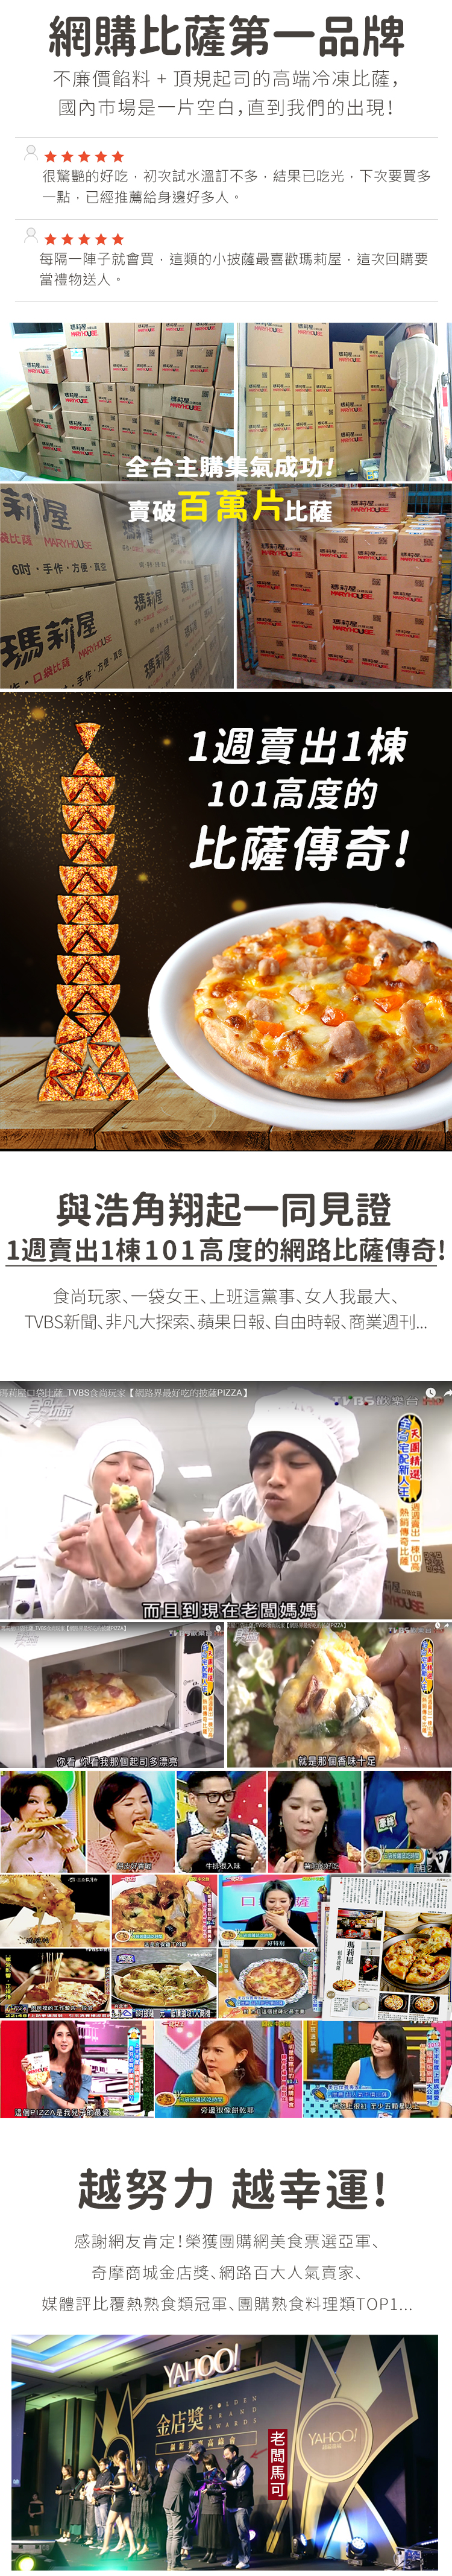 瑪莉屋口袋比薩pizza【韓風泡菜豬肉披薩】